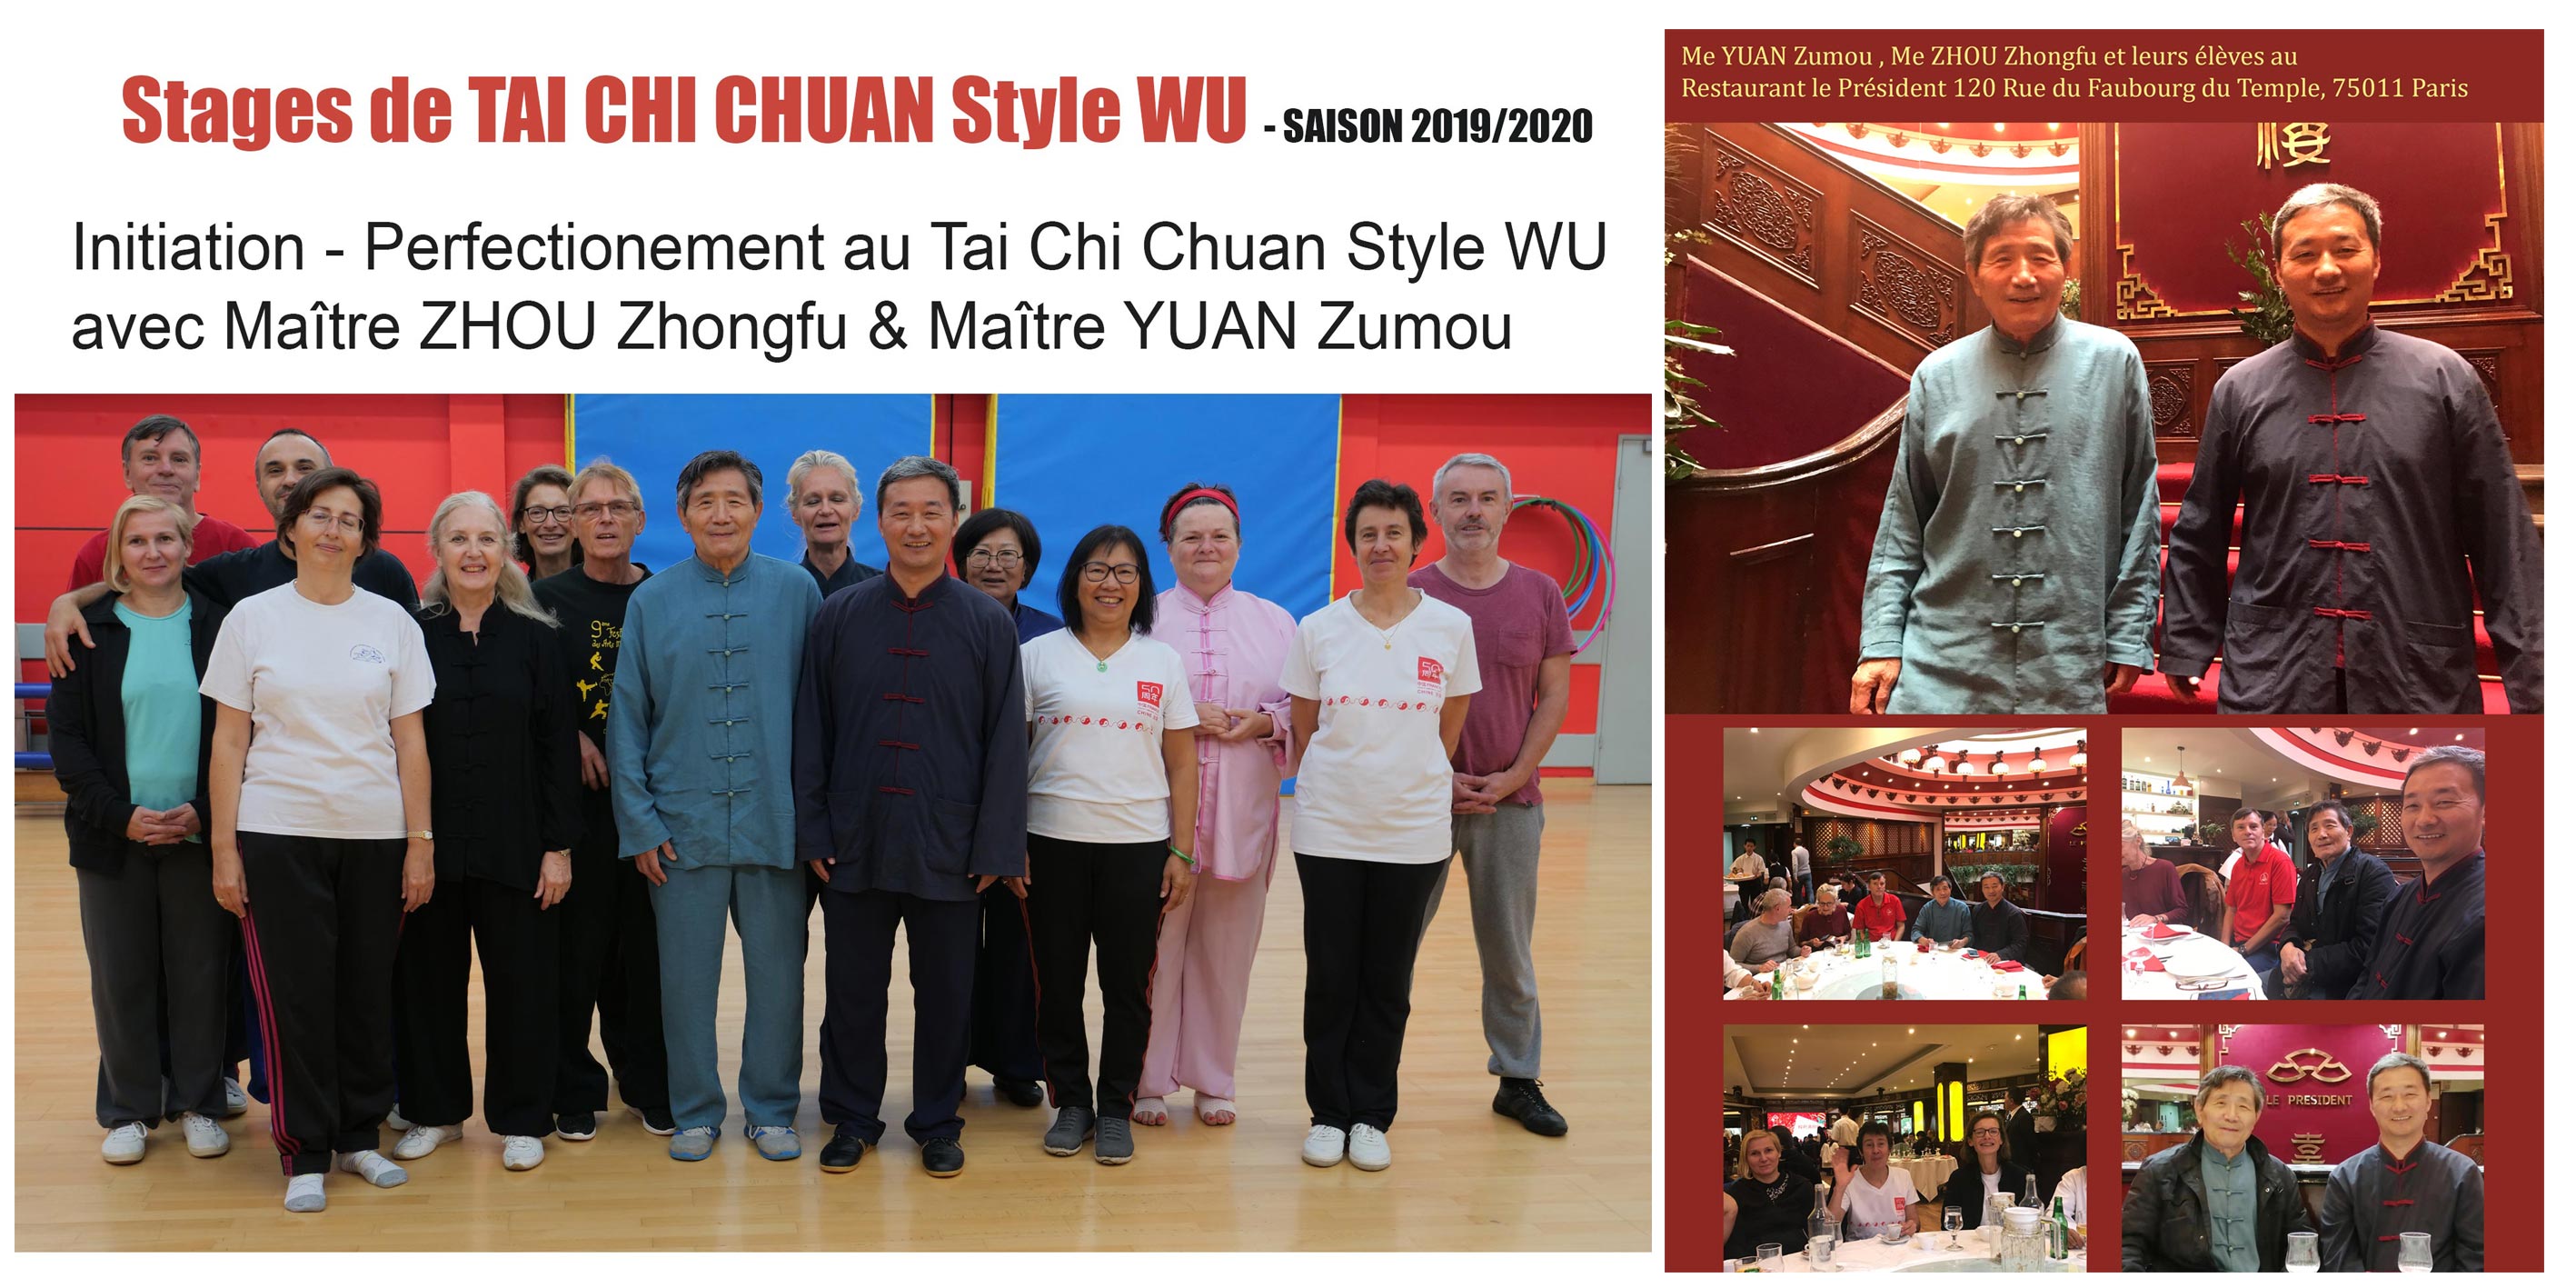 Initiation, perfectionnement de Tai Chi Chuan au style WU
Avec Me YUAN  Zumou et Me  ZHOU  Zhongfu